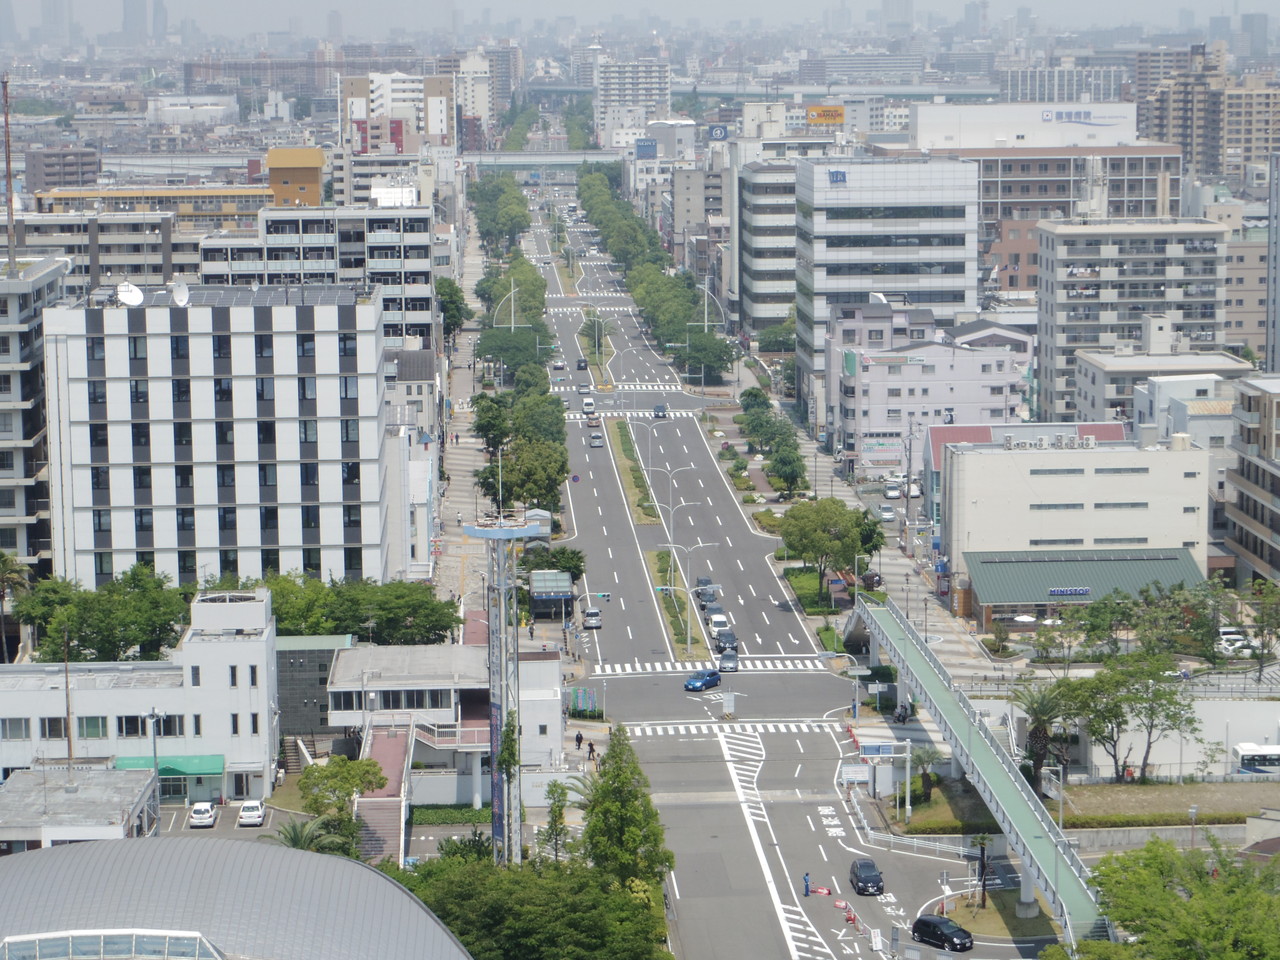 名古屋港ポートビルからの市街地の眺め。ミソカツ、テバサキ、ヒツマブシ・・・